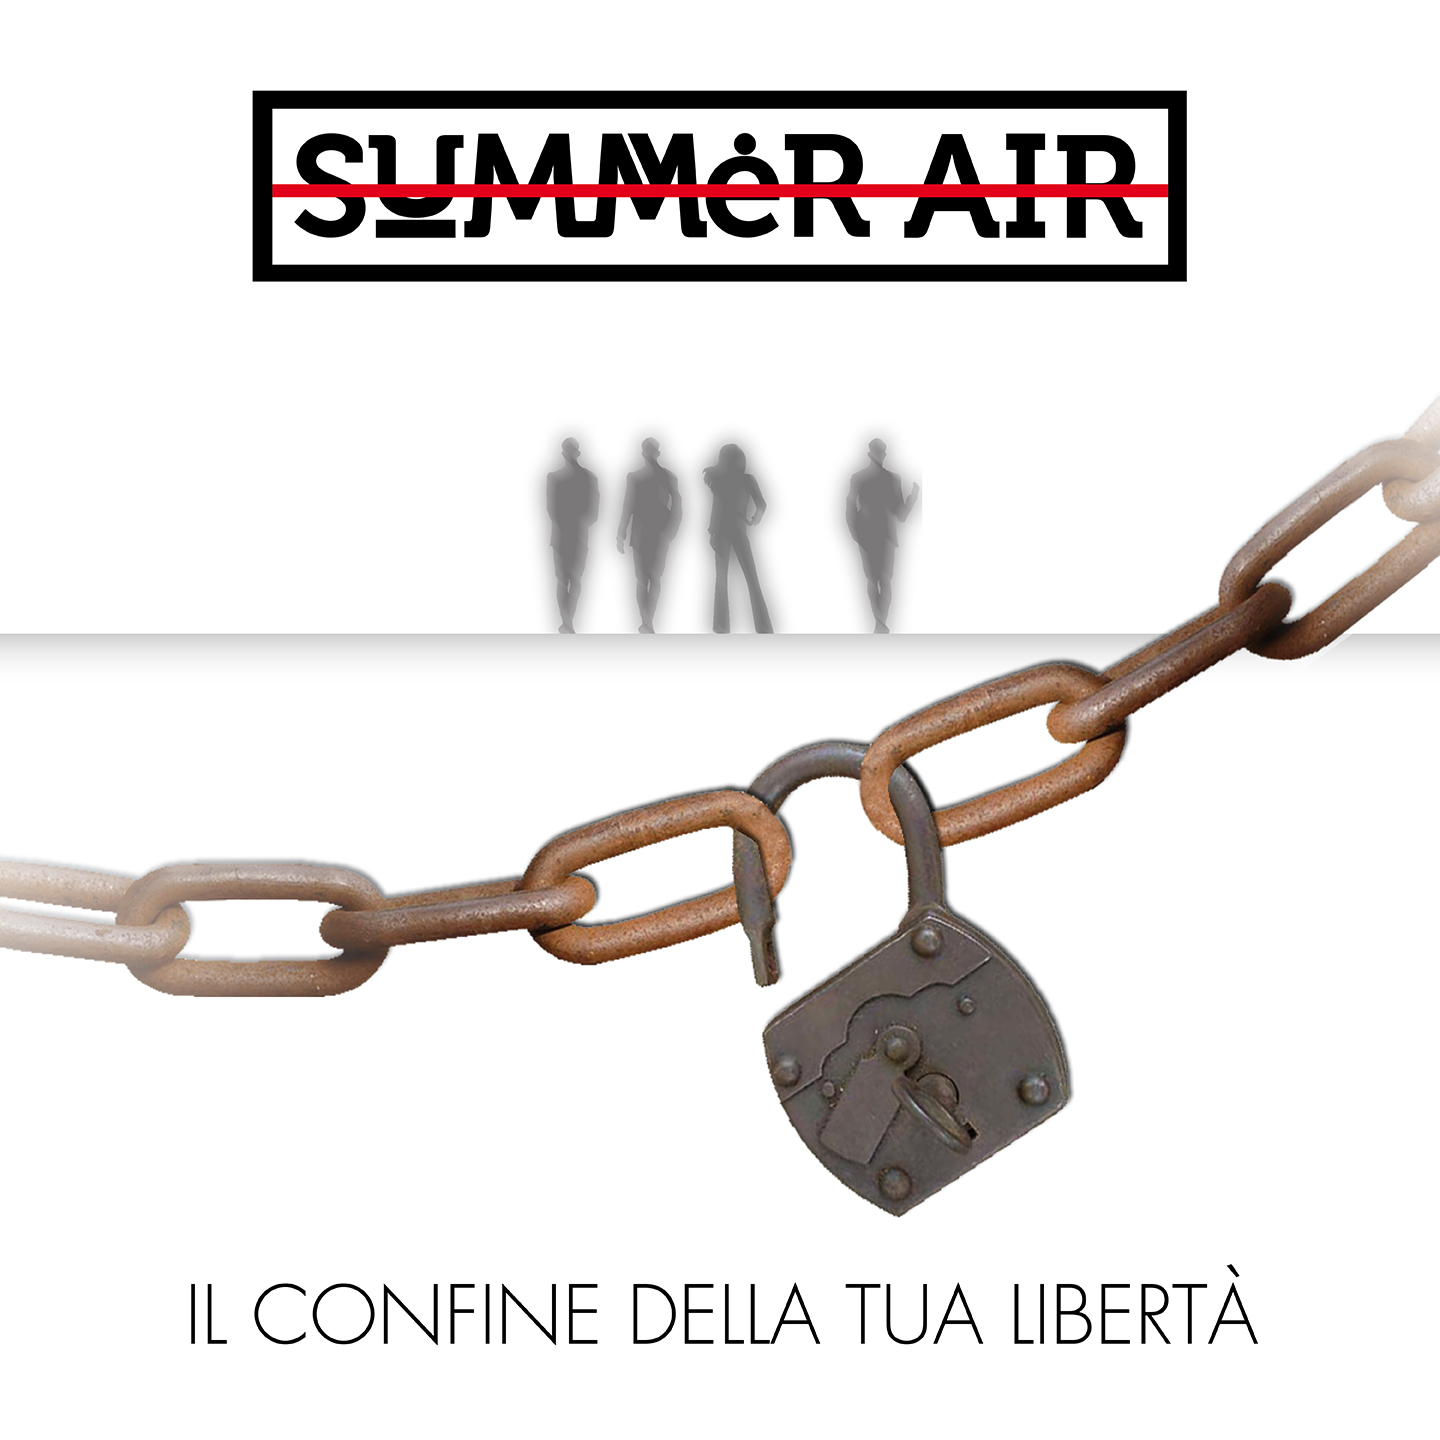 I Summer Air e il loro EP “Il confine della tua libertà”!